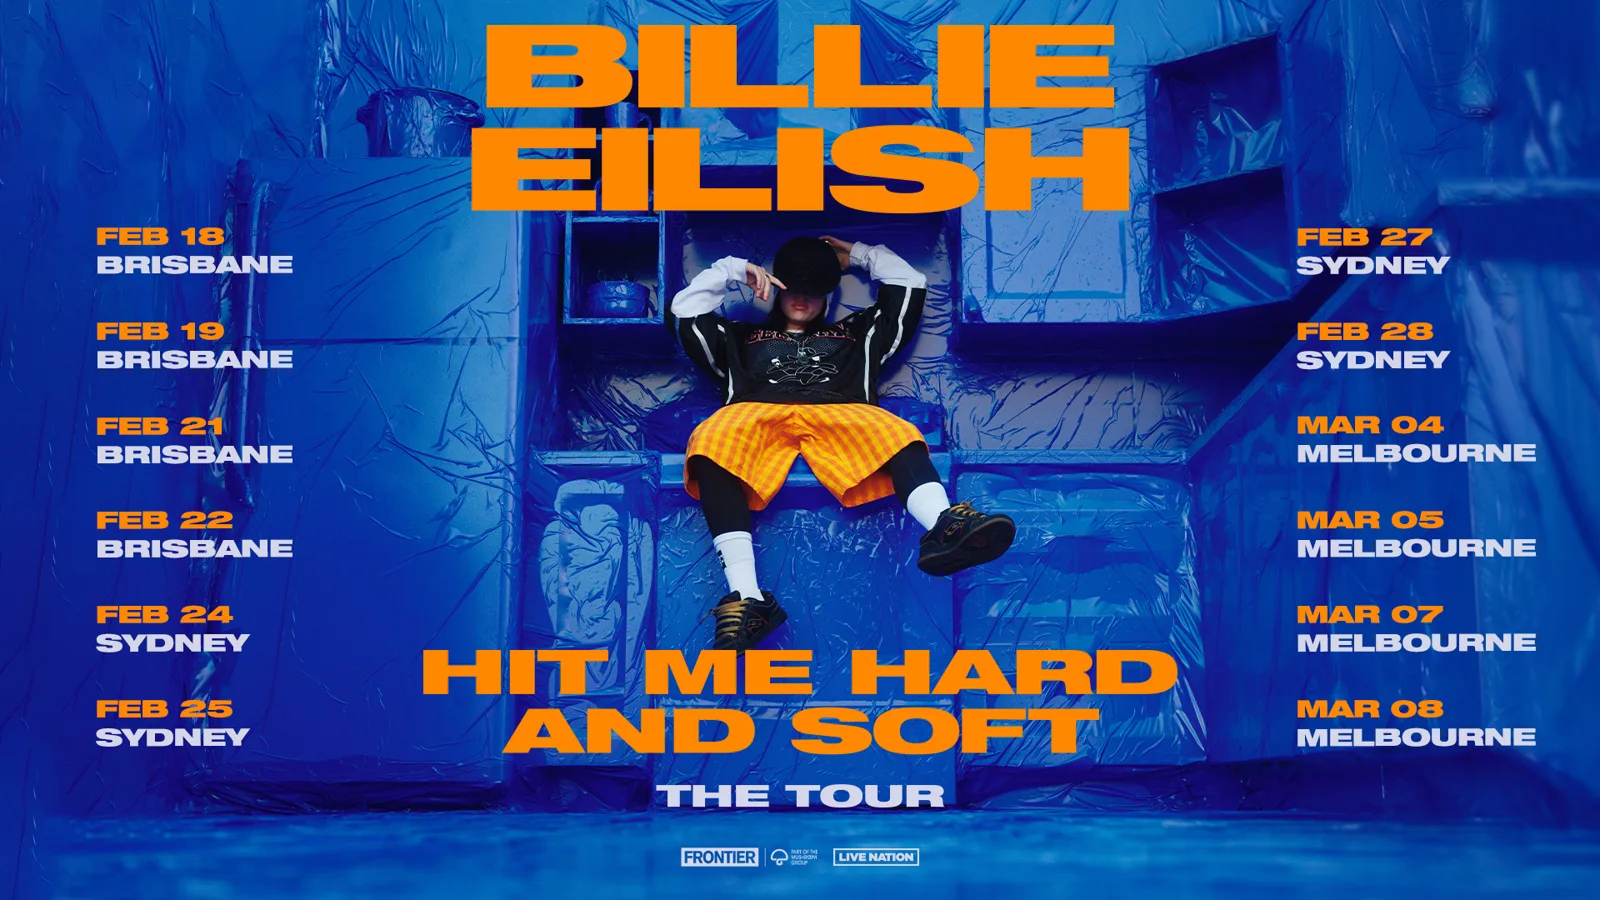 BILLIE EILISH ANNOUNCES ‘HIT ME HARD AND SOFT: THE TOUR’